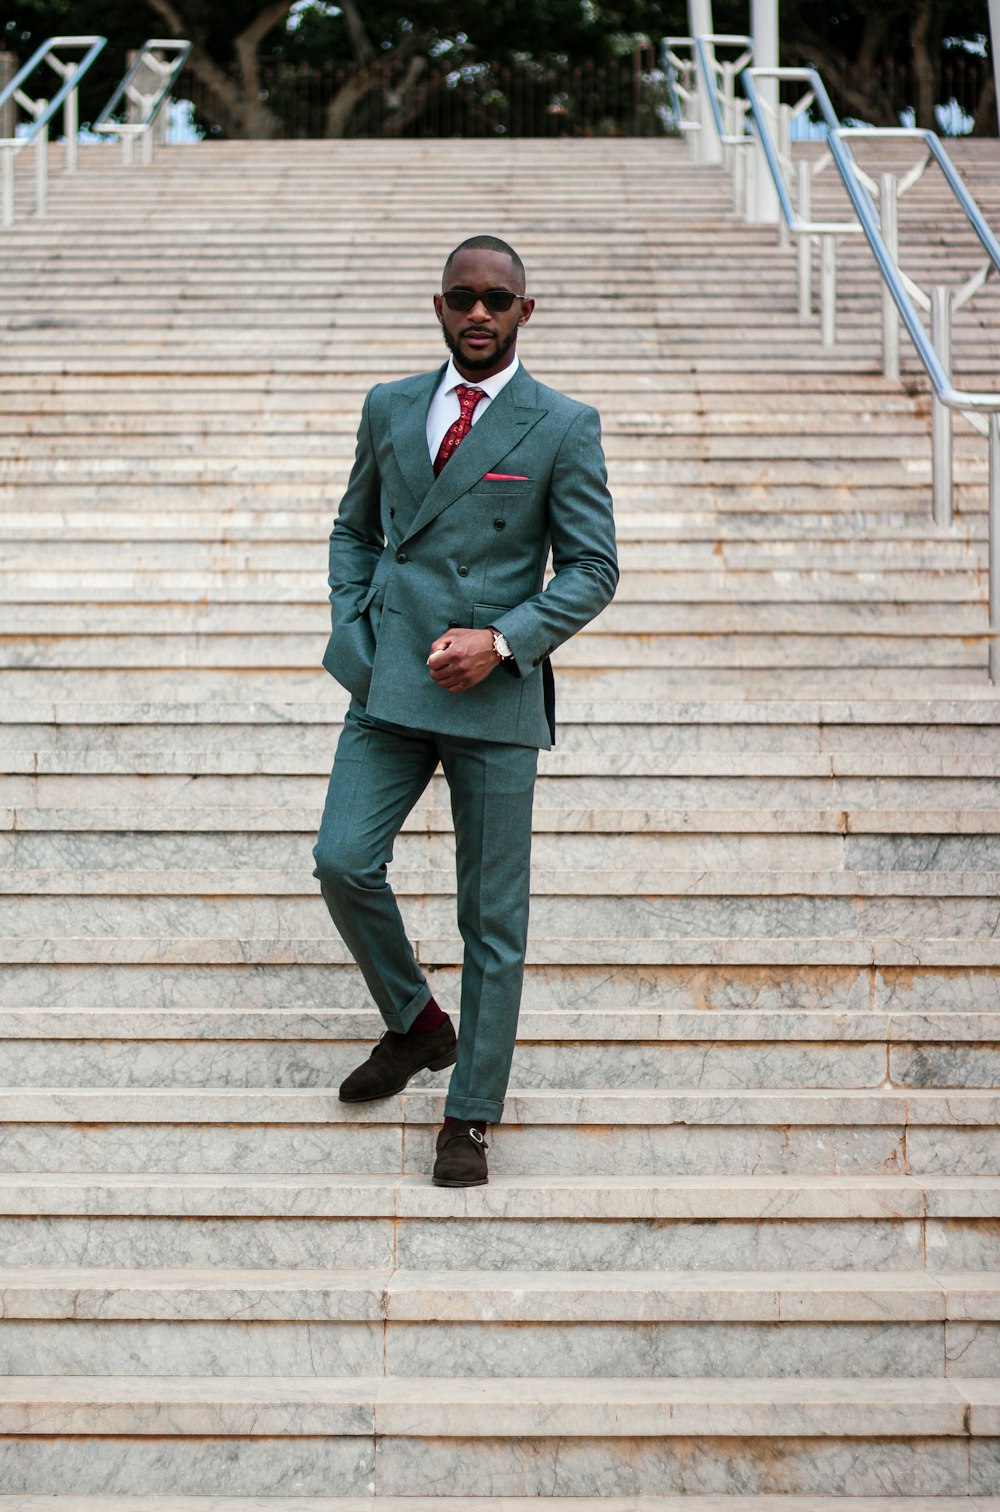 Más de imágenes de hombre negro con traje Descargar imágenes gratis en Unsplash